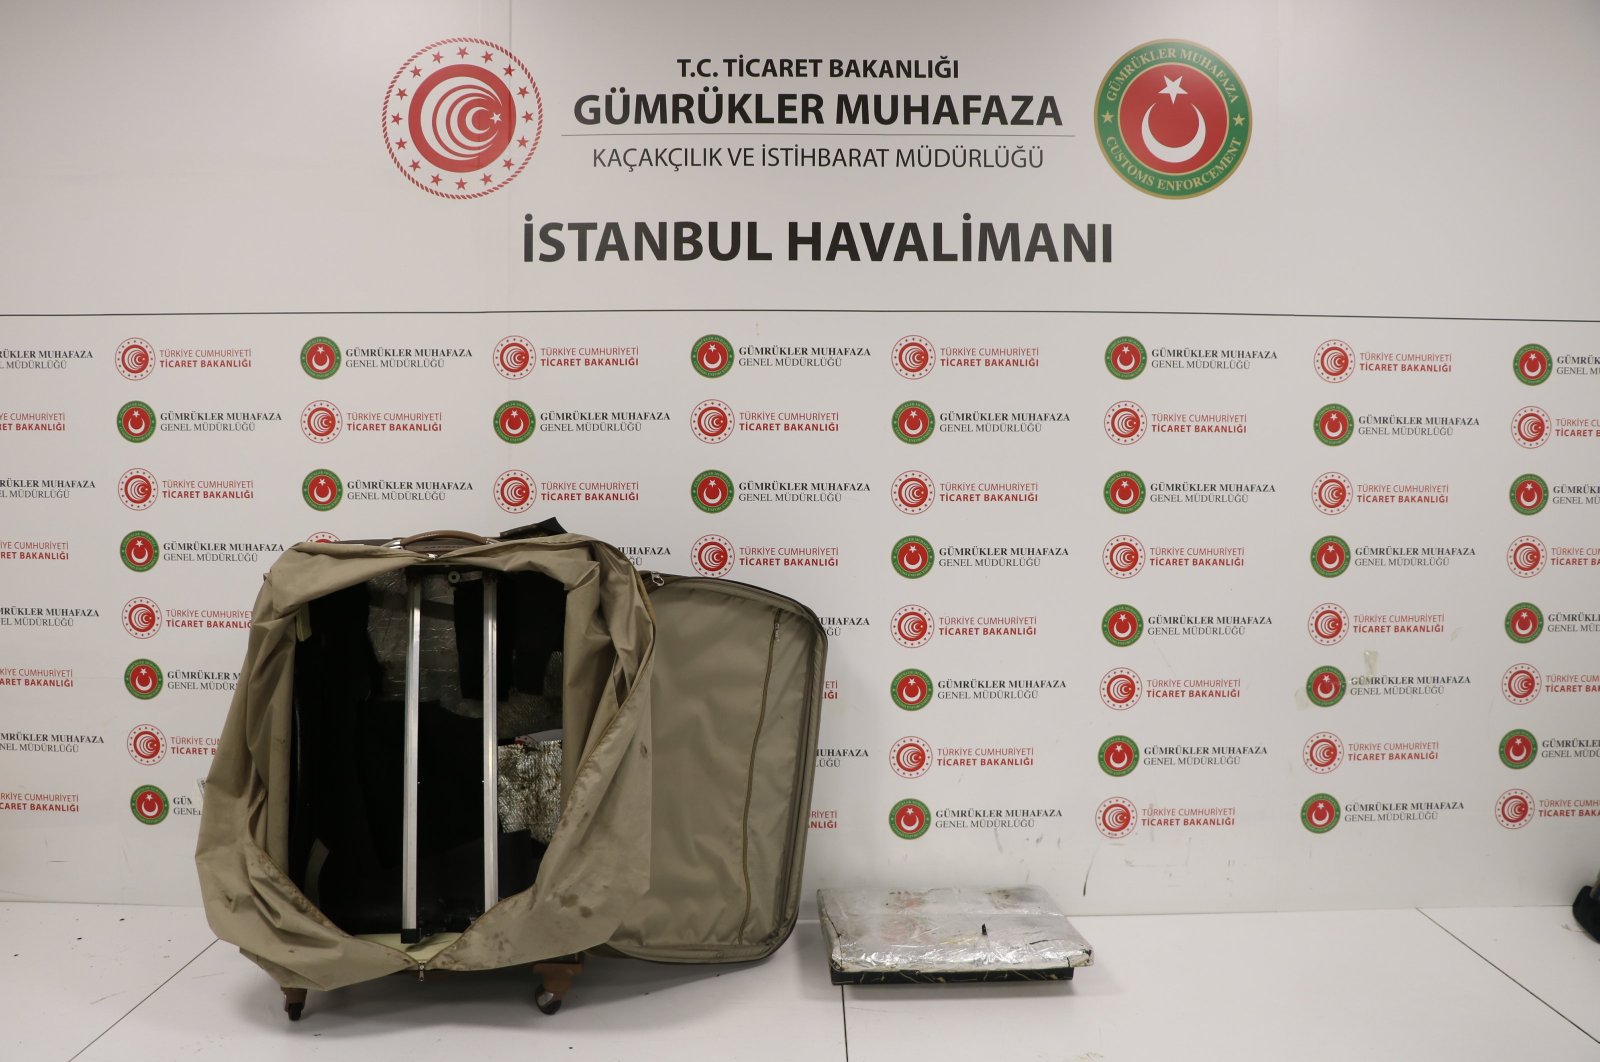 Türk yetkilileri 28.8 milyon dolarlık kaçakçılığı engelledi: Ticaret Bakanlığı